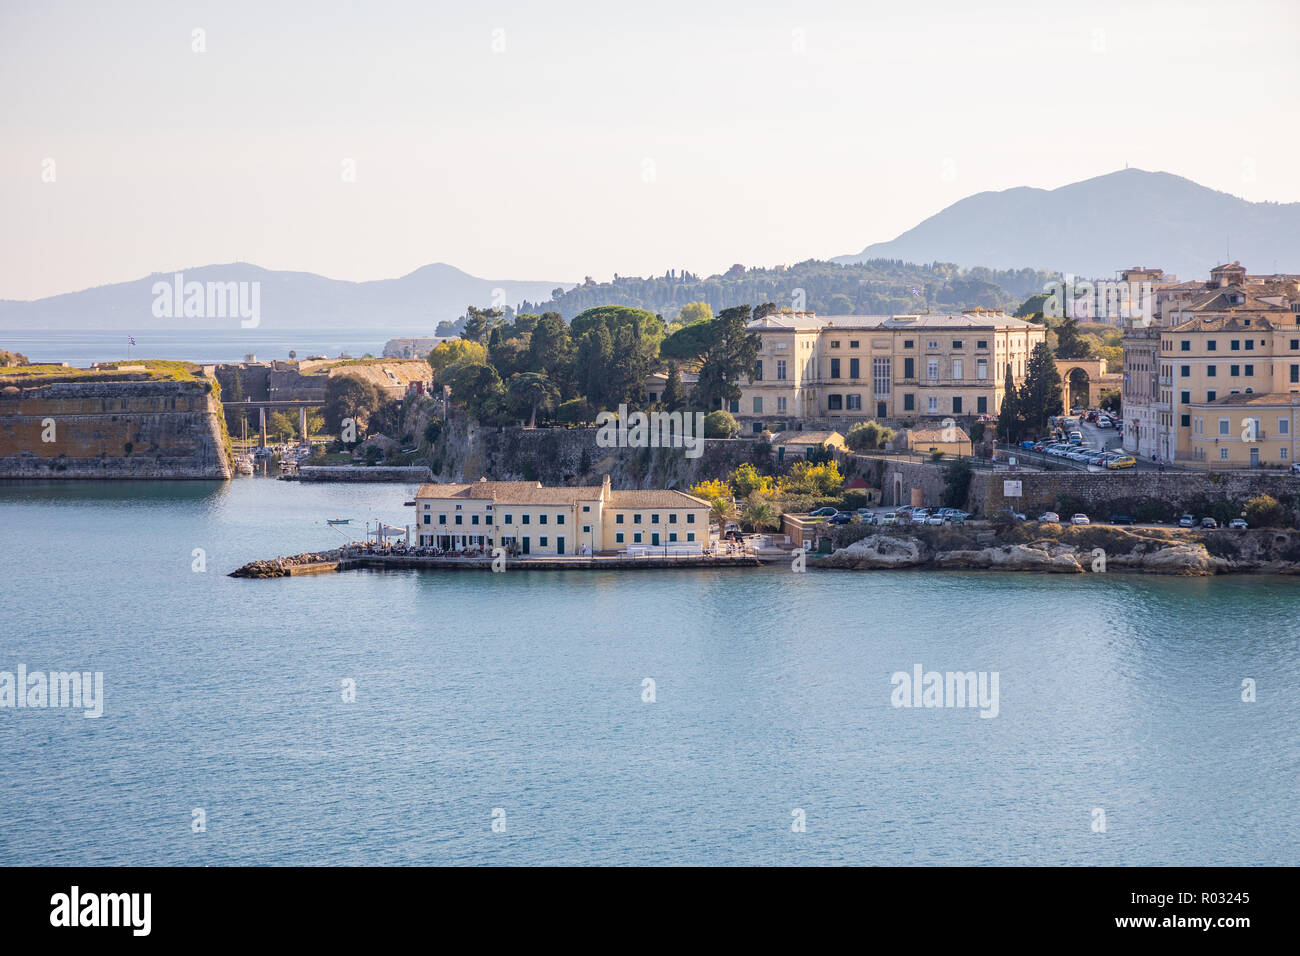 La città di Corfù vista dall'acqua, Grecia Foto Stock